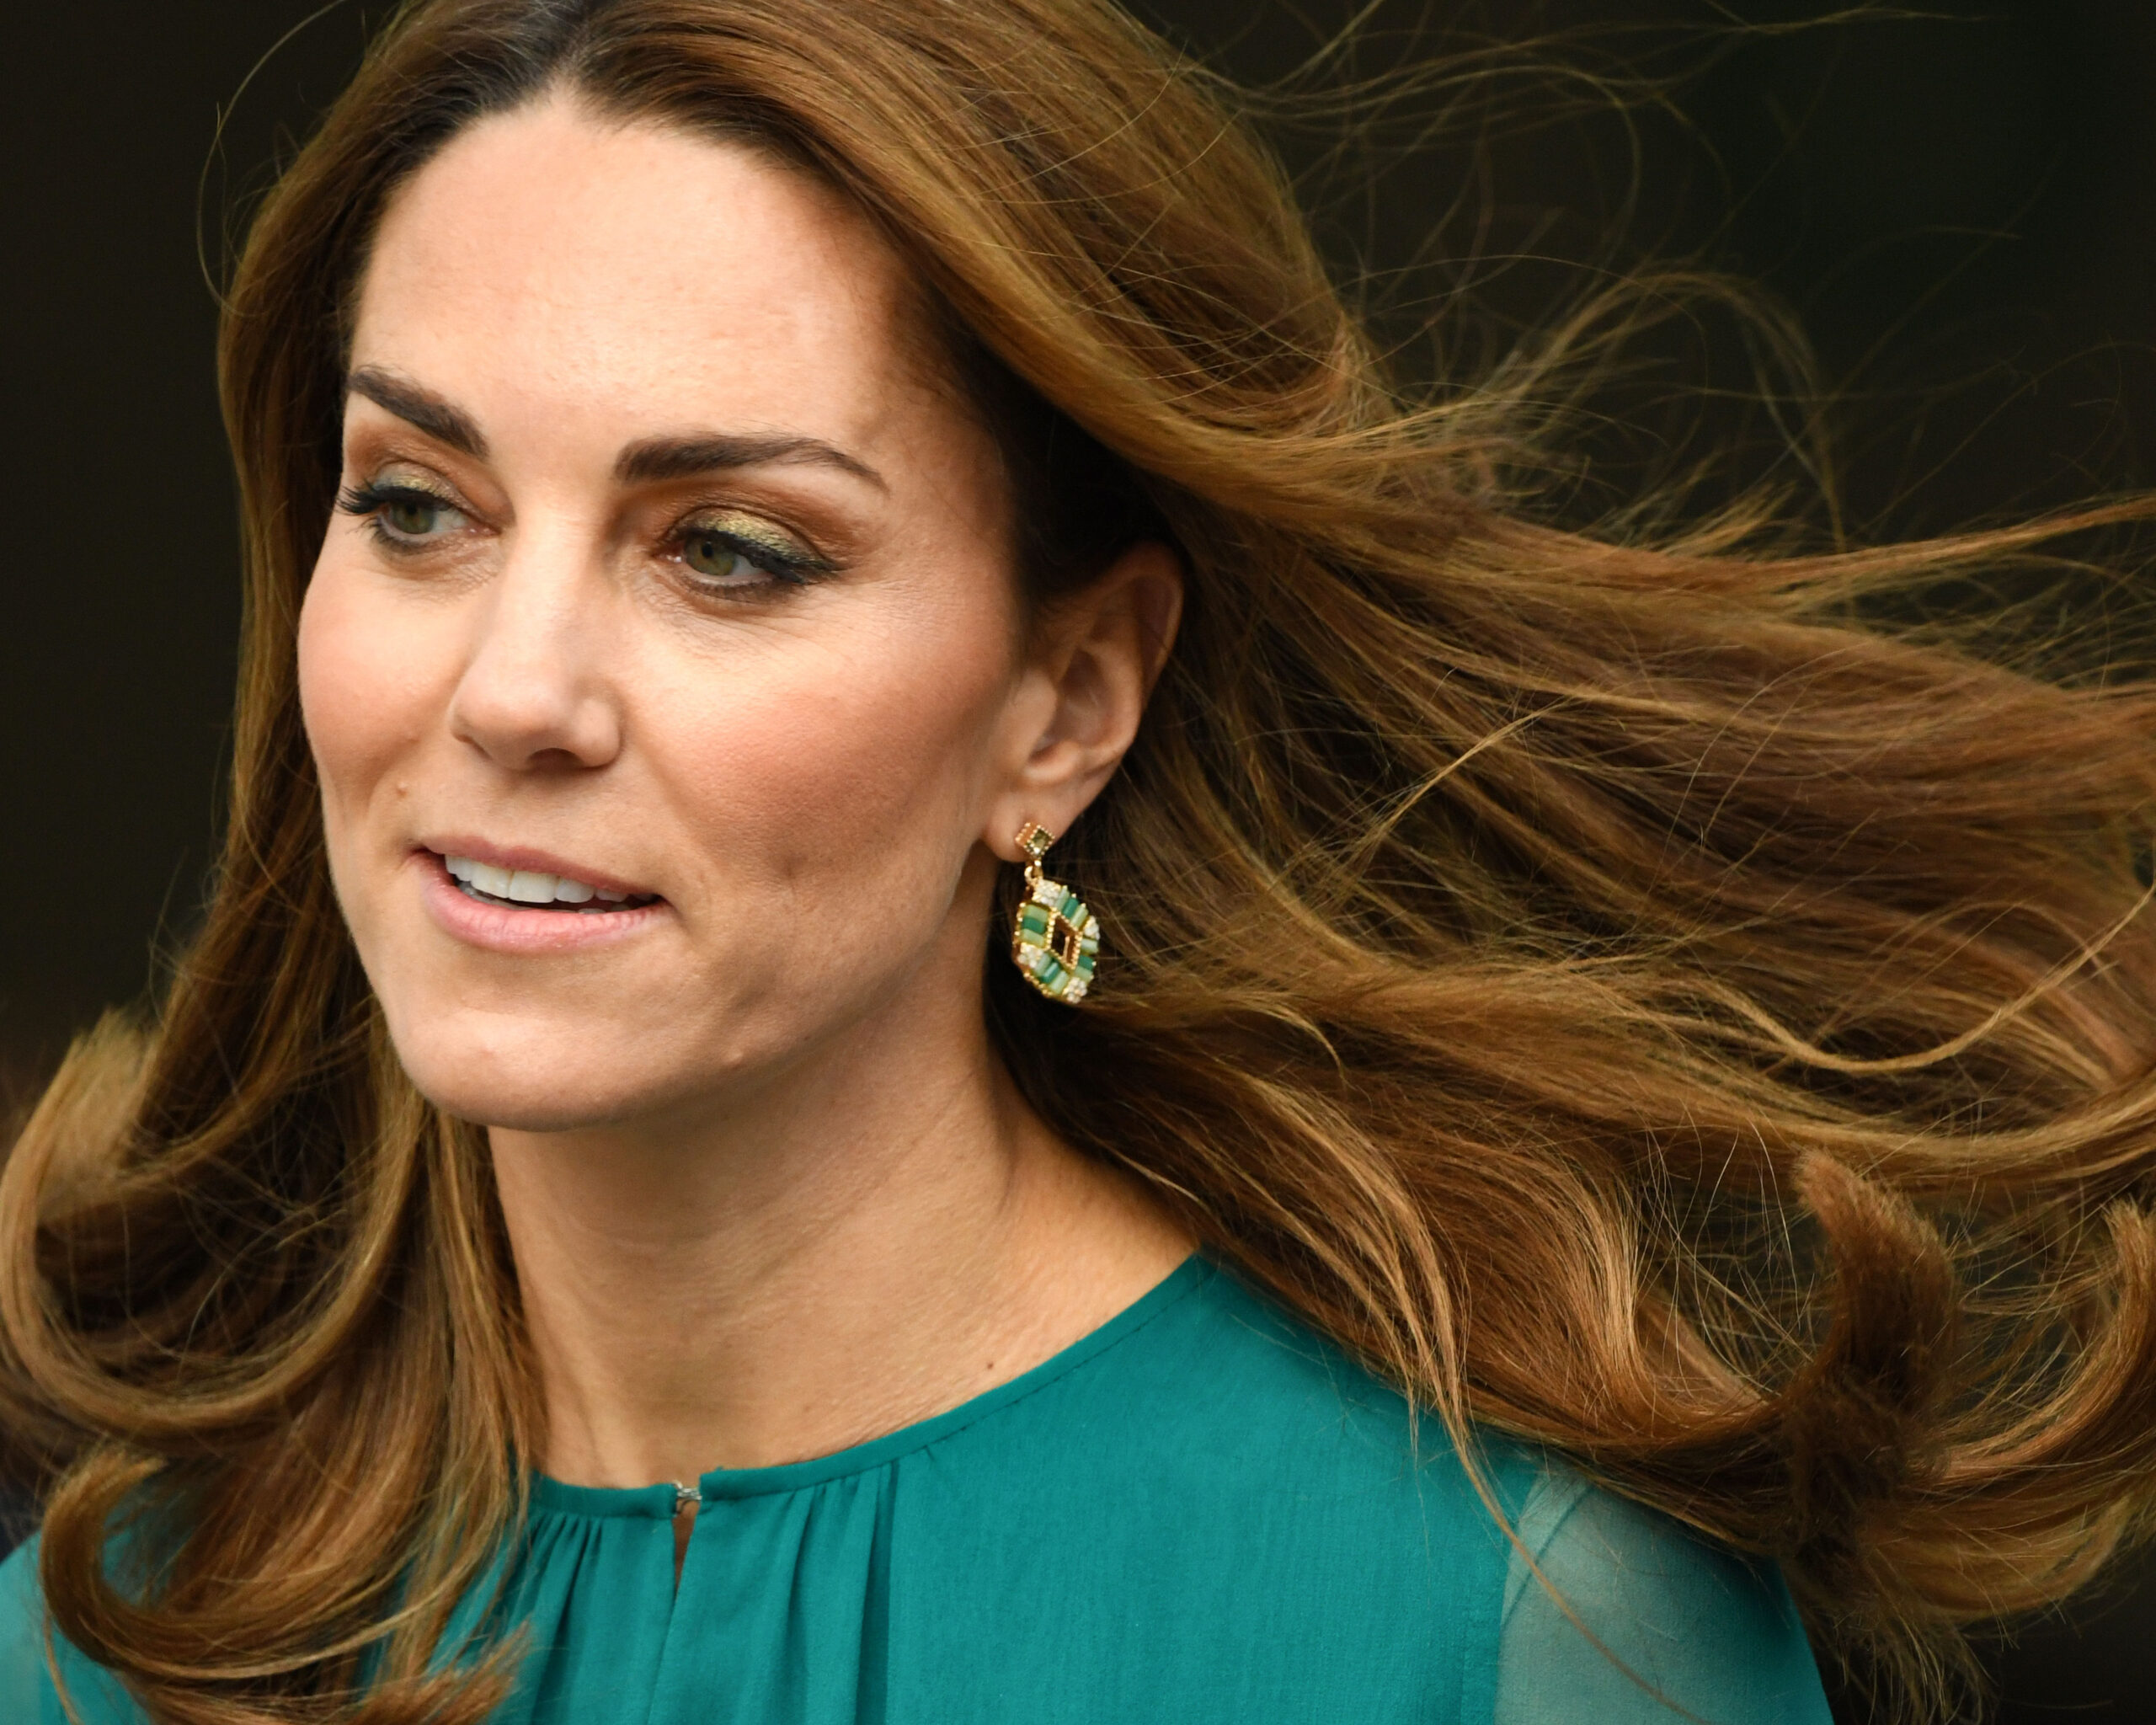 Kate Middleton într-o apariție publică. Sursa: Shutterstock